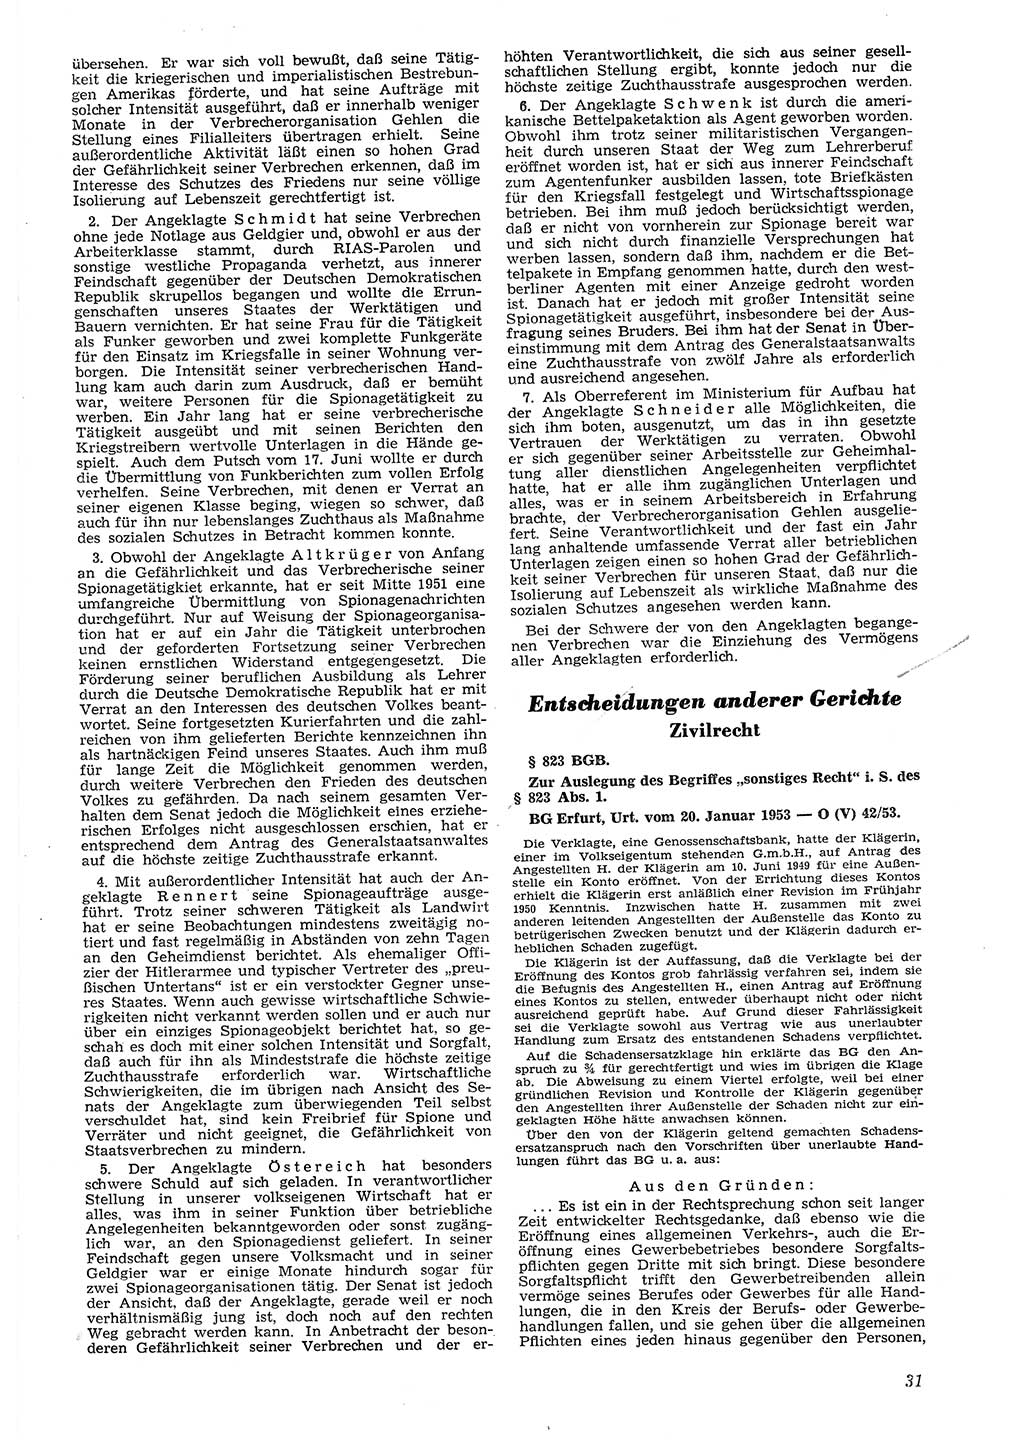 Neue Justiz (NJ), Zeitschrift für Recht und Rechtswissenschaft [Deutsche Demokratische Republik (DDR)], 8. Jahrgang 1954, Seite 31 (NJ DDR 1954, S. 31)